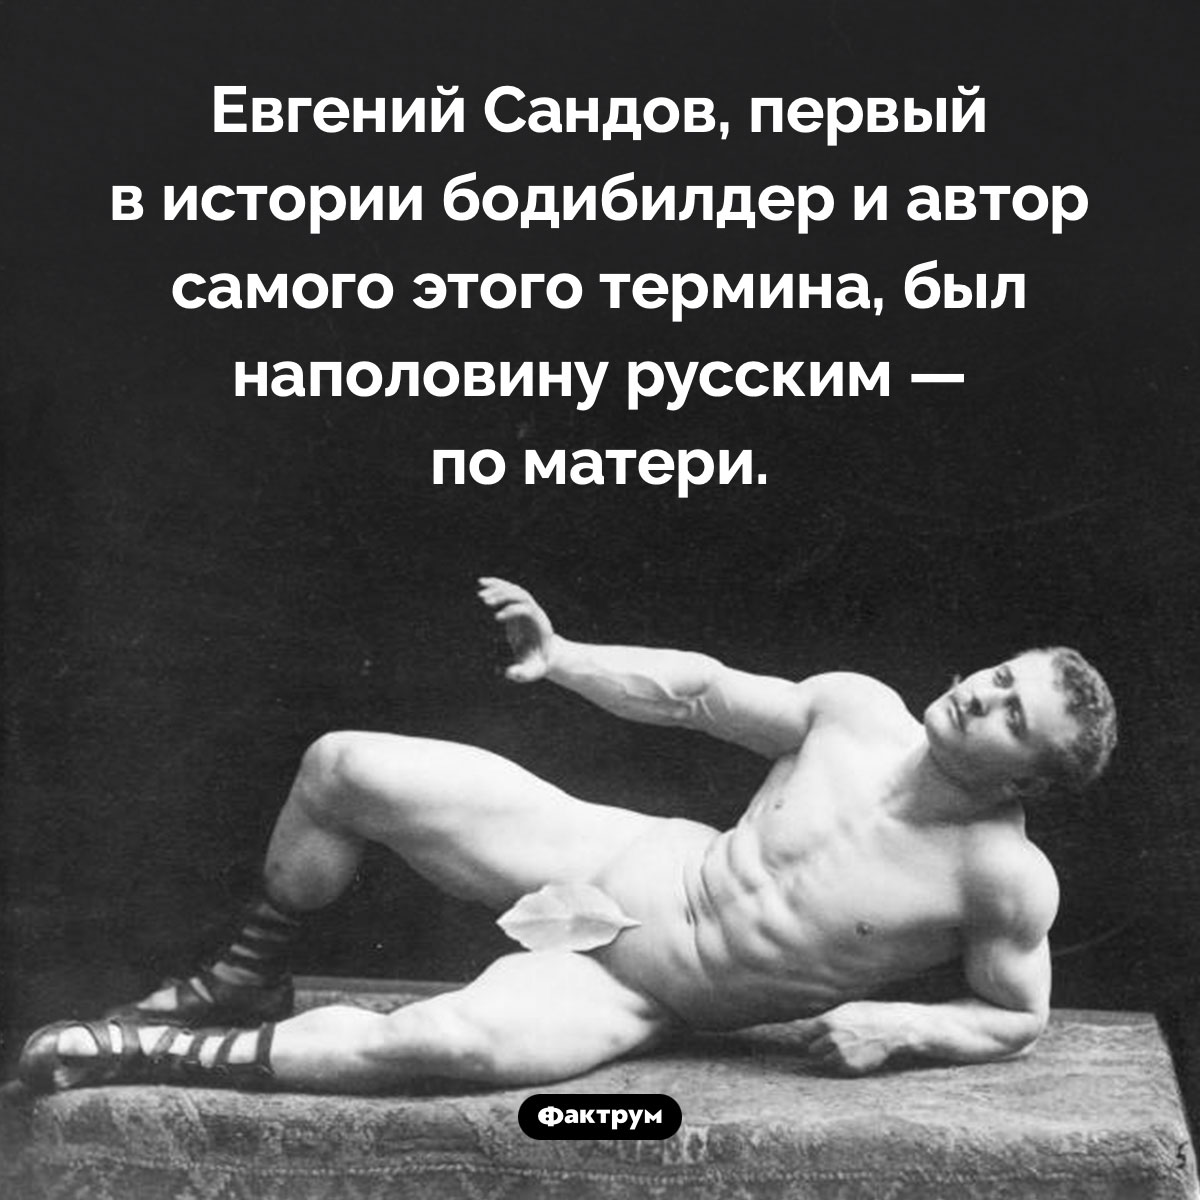 Первый в истории бодибилдер был наполовину русским. Евгений Сандов, первый в истории бодибилдер и автор самого этого термина, был наполовину русским — по матери.